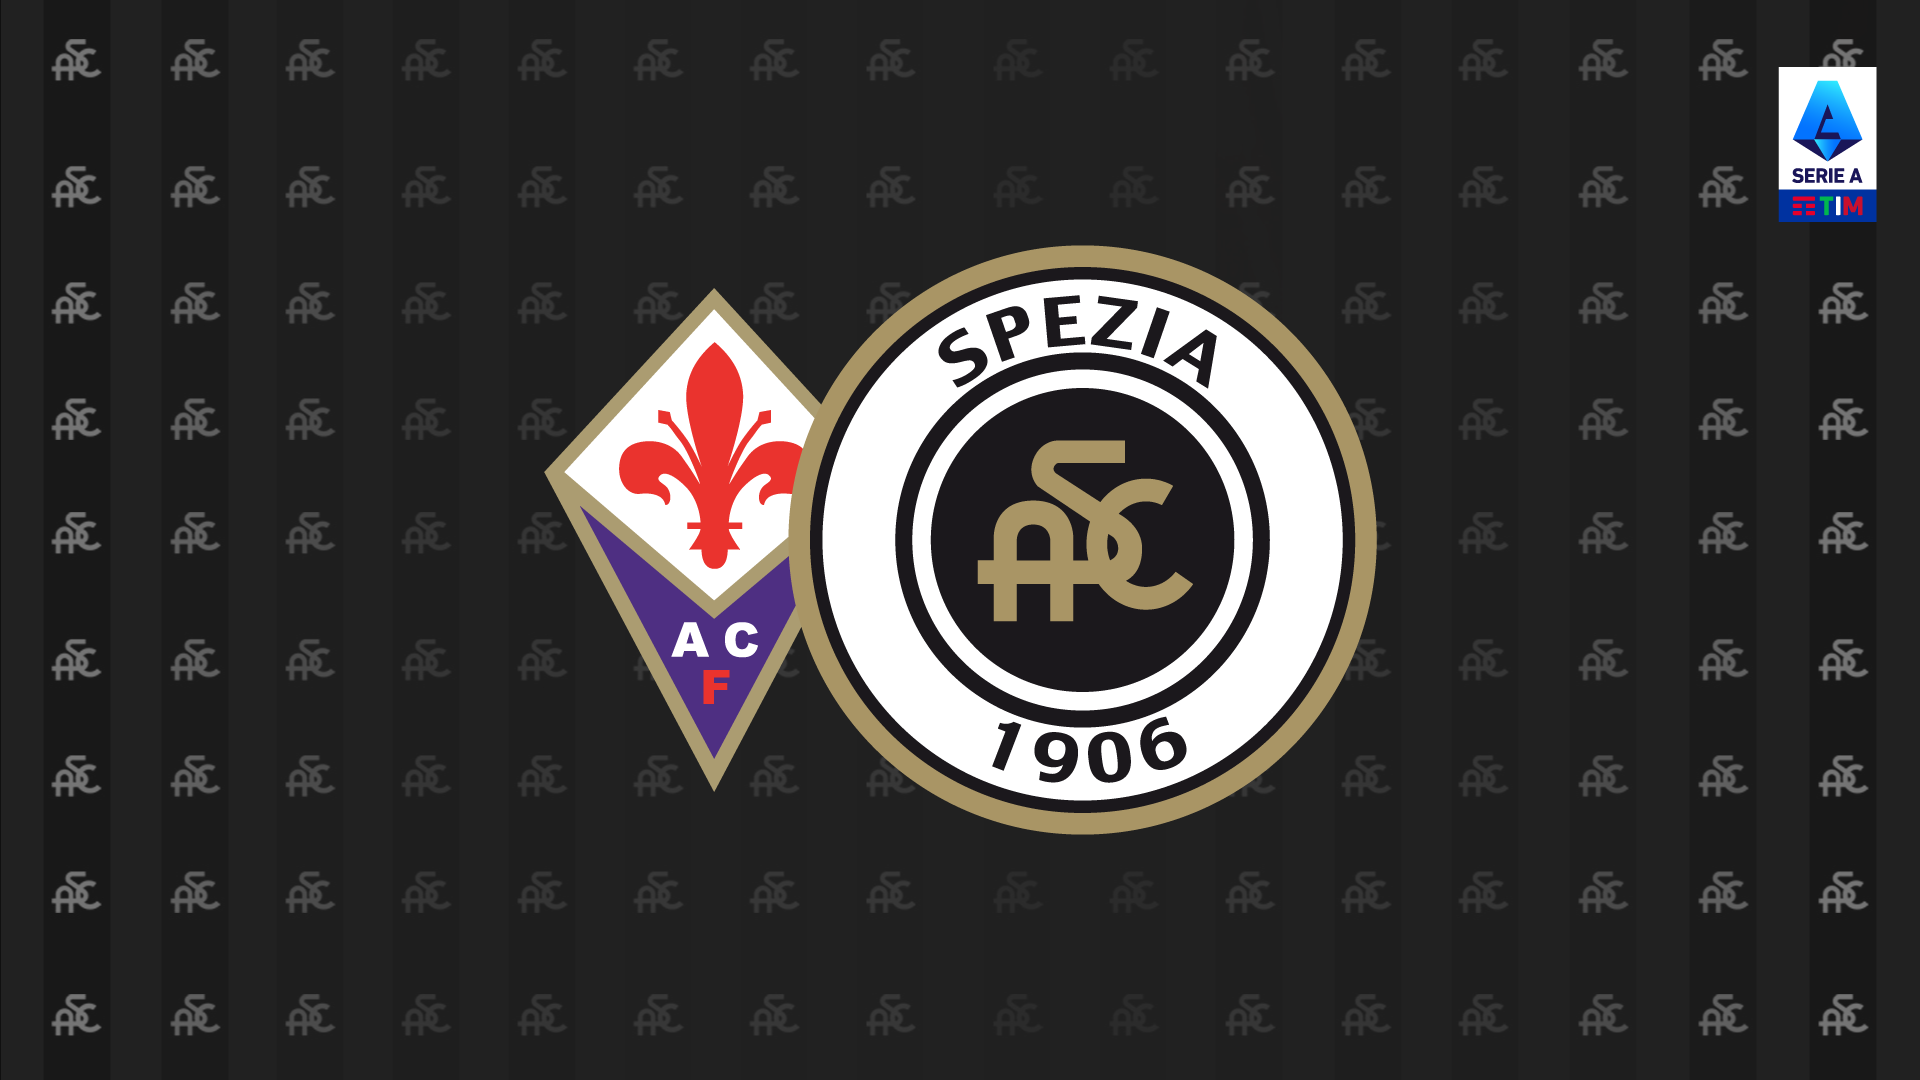 Fiorentina-Spezia: presale available on Ticketone